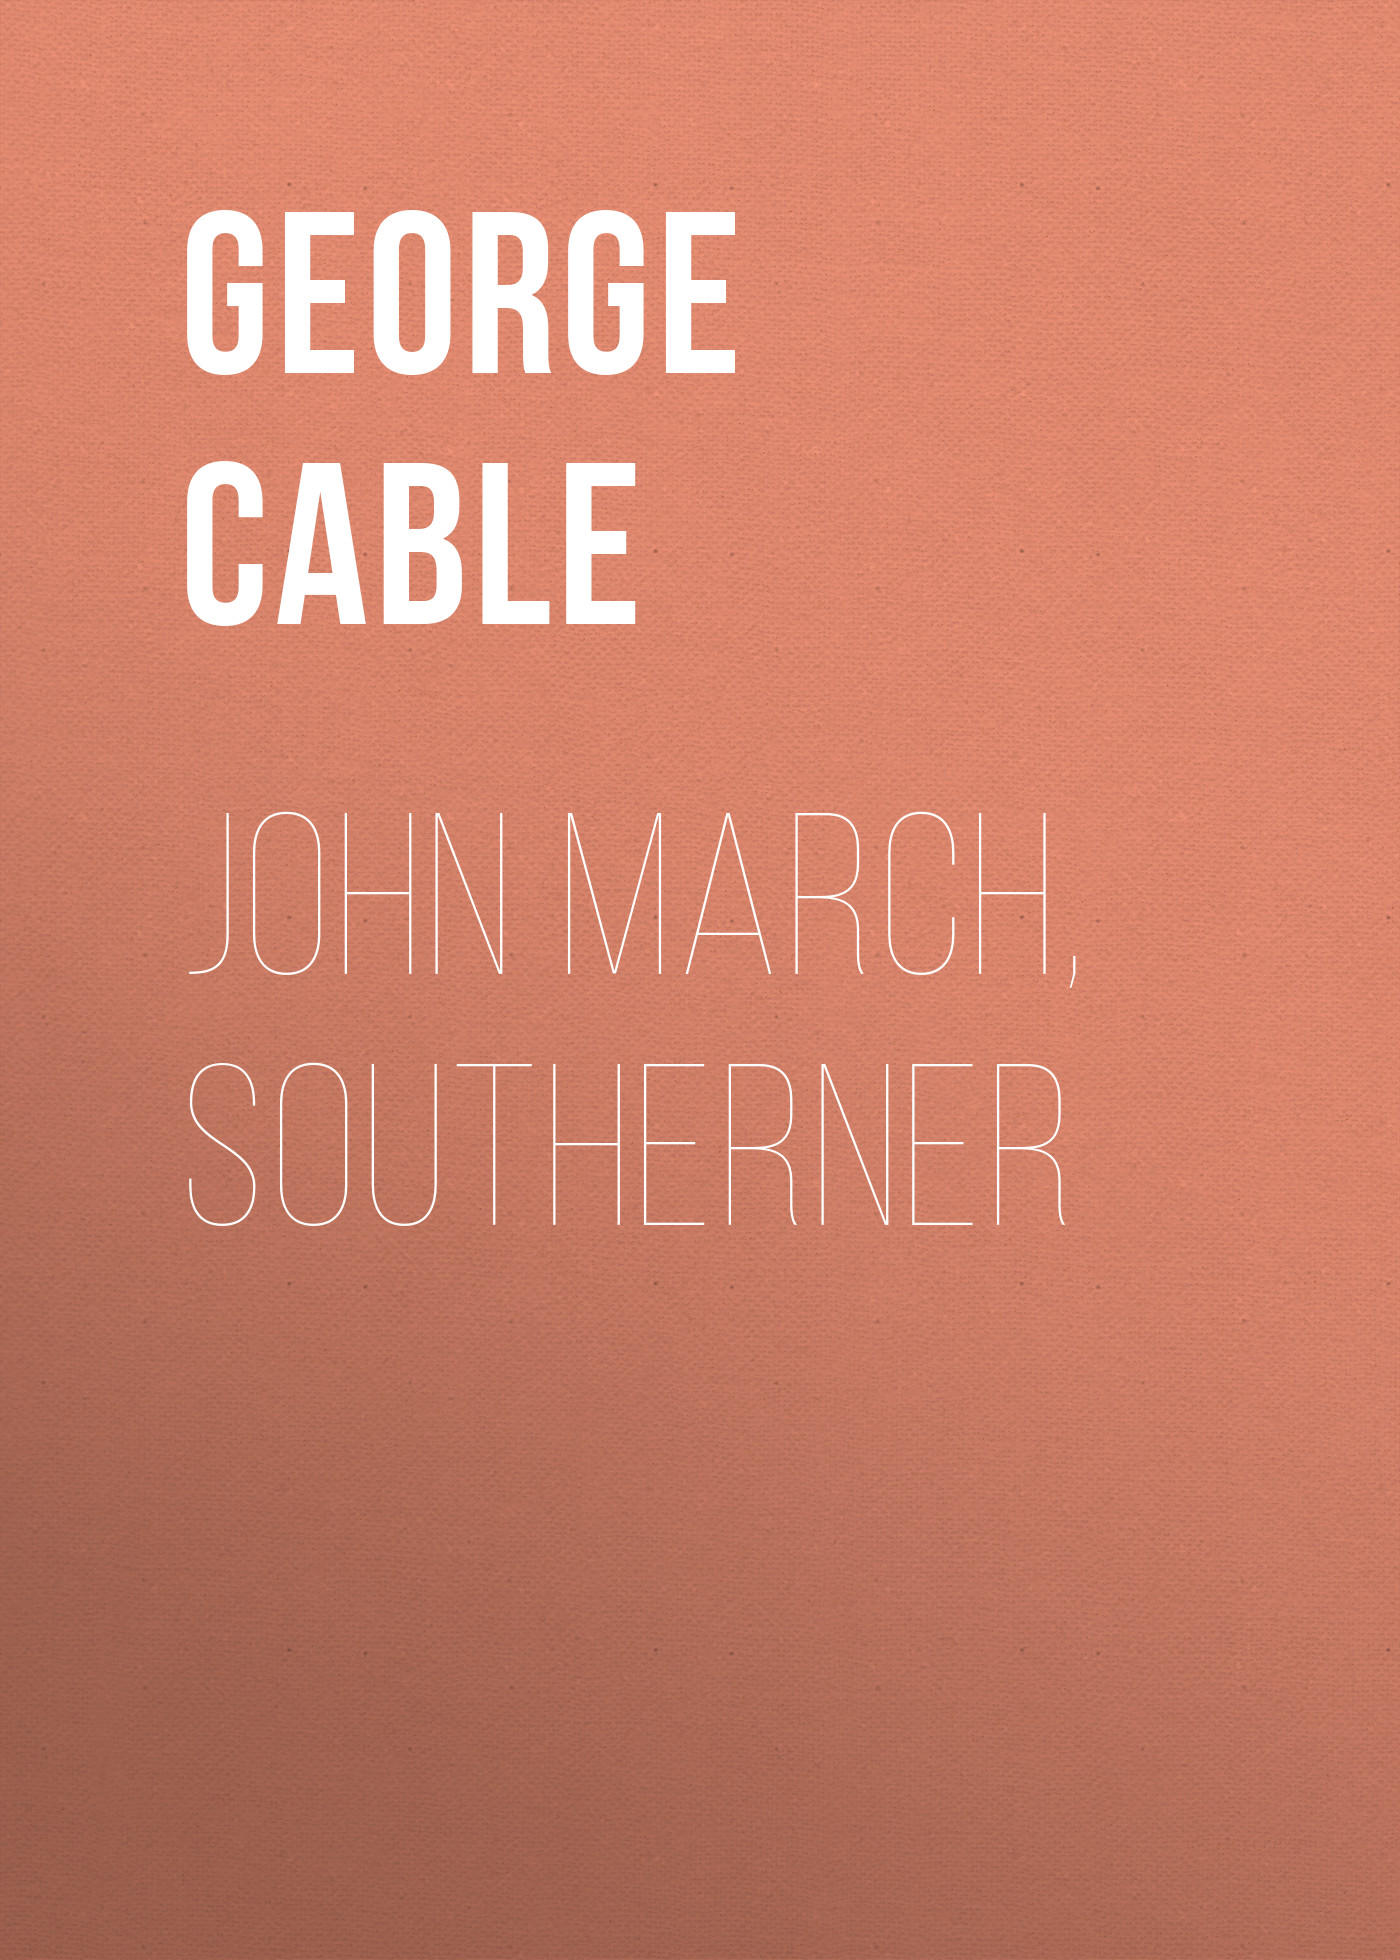 Книга John March, Southerner из серии , созданная George Cable, может относится к жанру Зарубежная старинная литература, Зарубежная классика. Стоимость электронной книги John March, Southerner с идентификатором 24173132 составляет 0.90 руб.